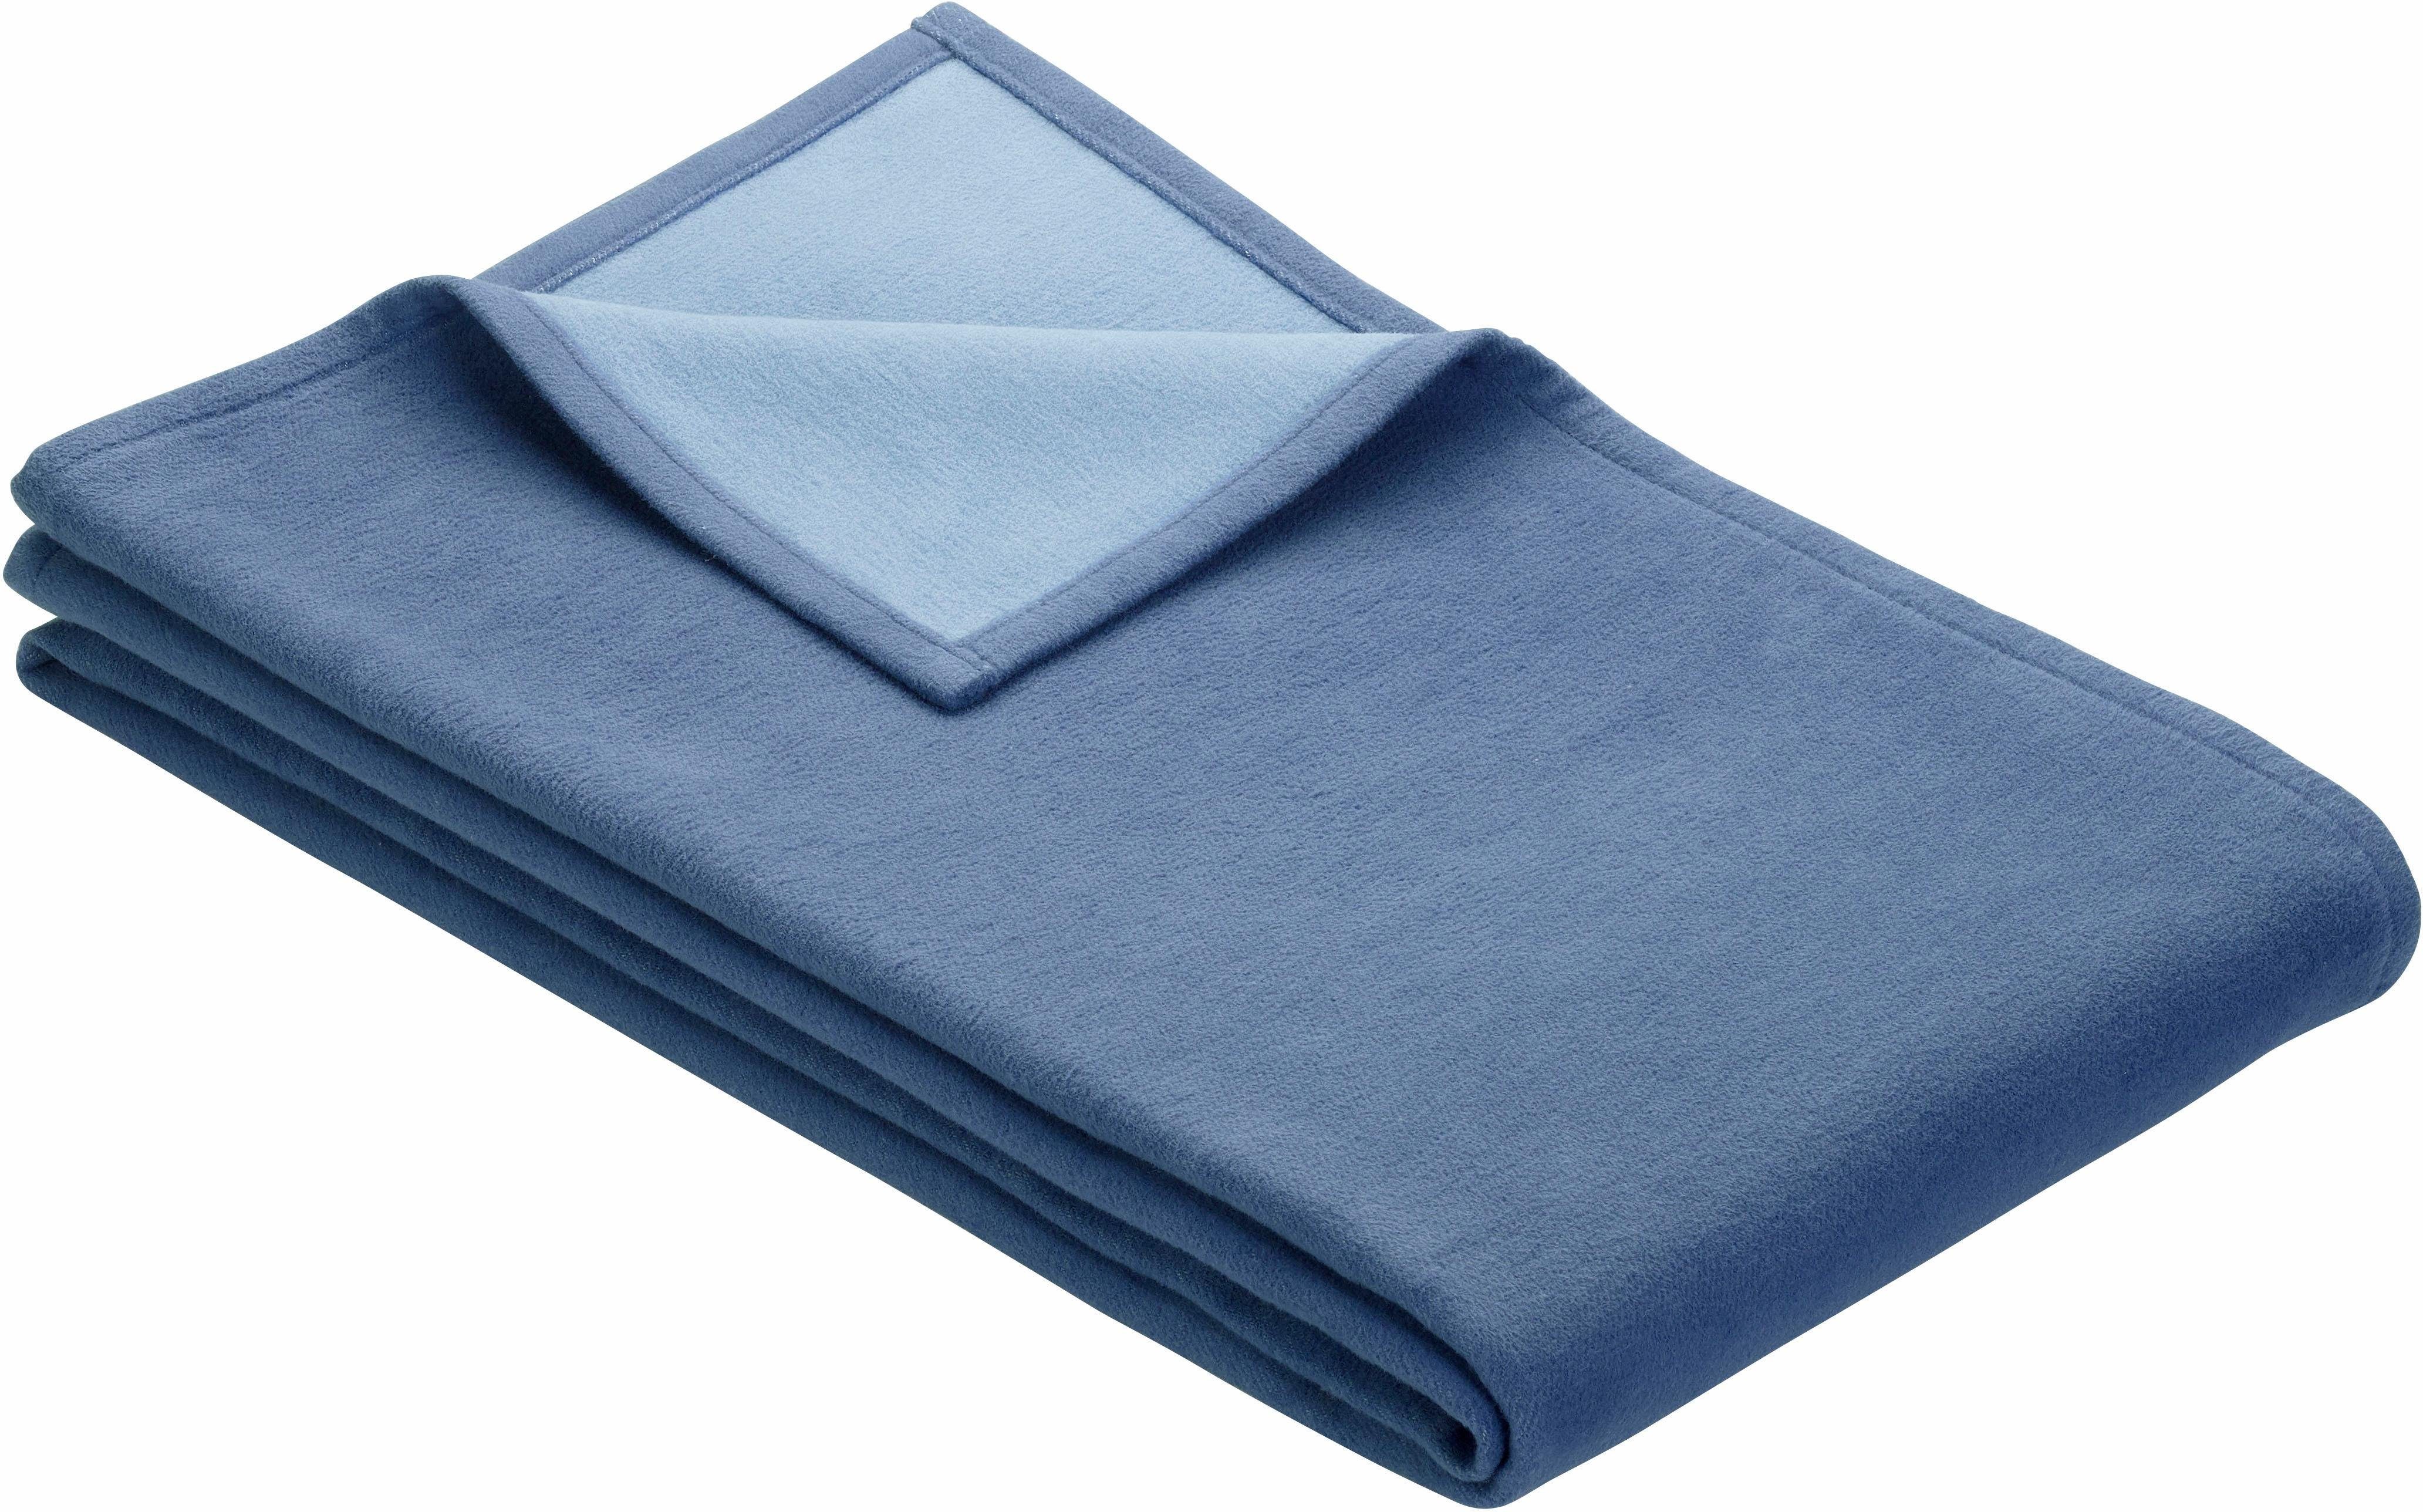 Wohndecke Cotton Pur, in blau trendigen IBENA, Farben